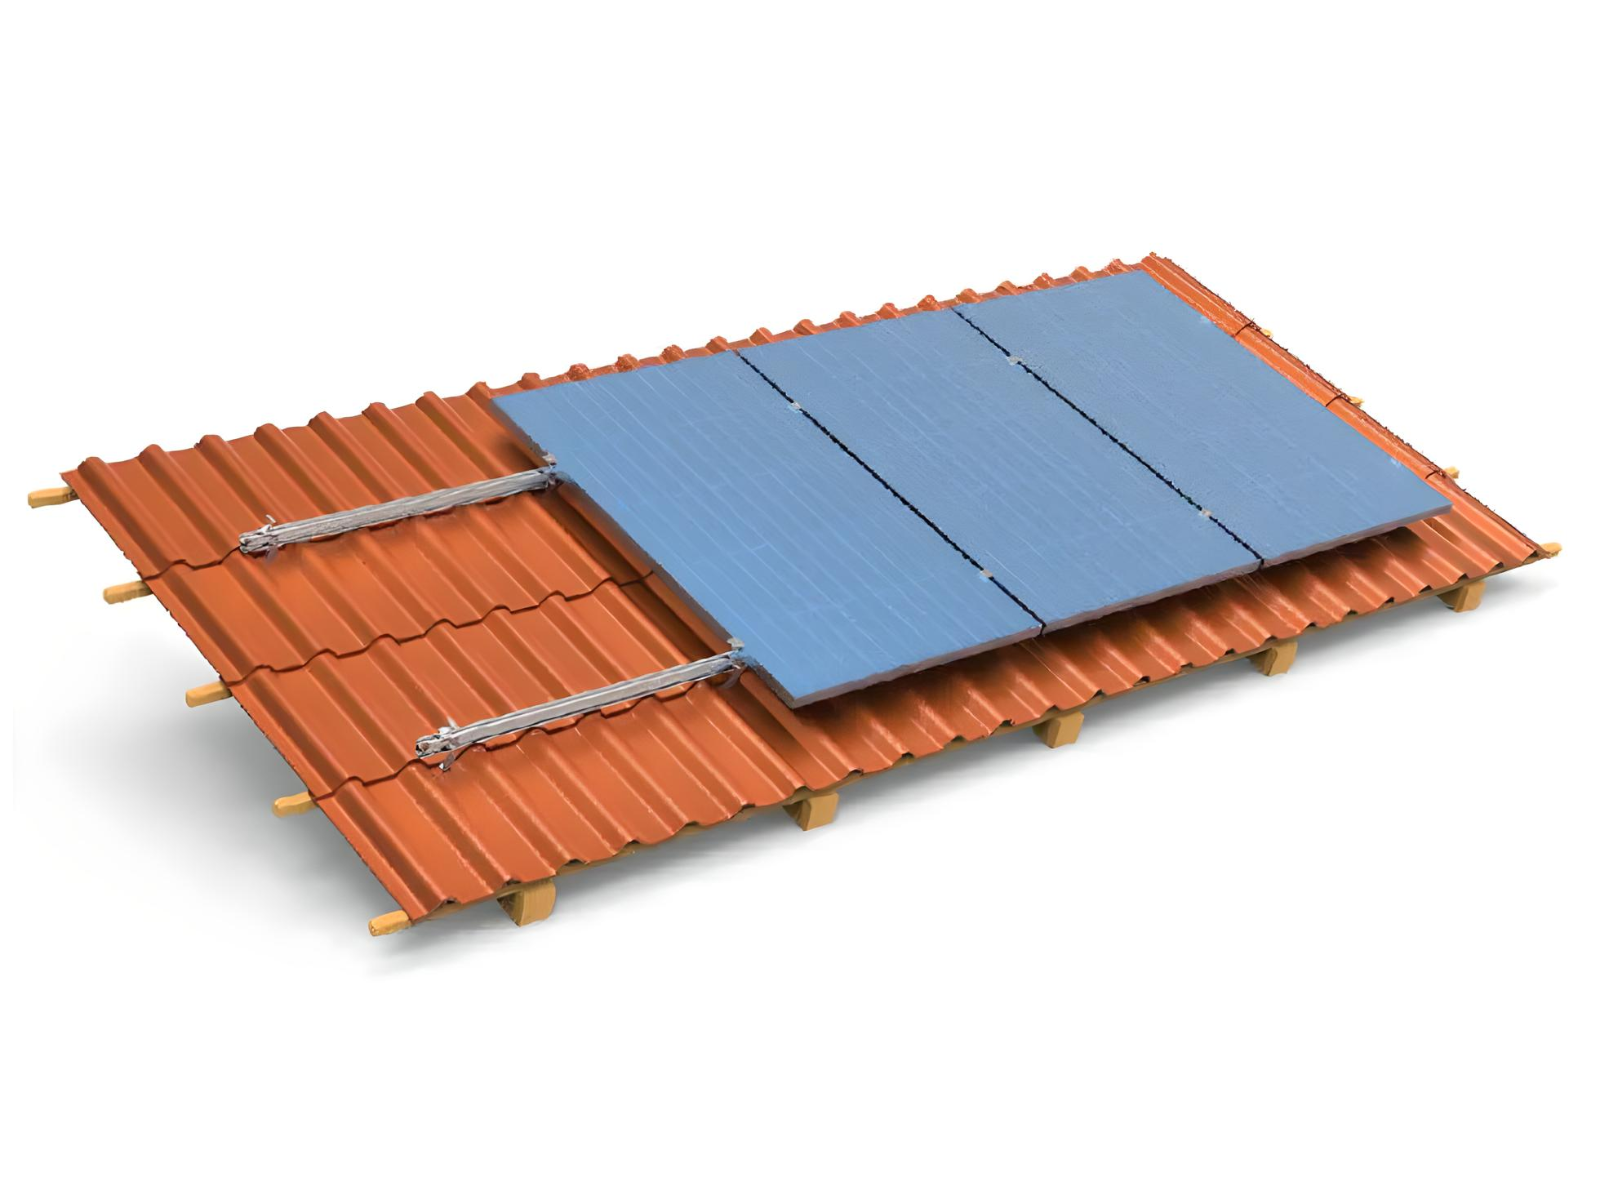 Halterungs-Set Ziegeldach 4 Solar Module TZIPower Balkonkraftwerk Halterung für